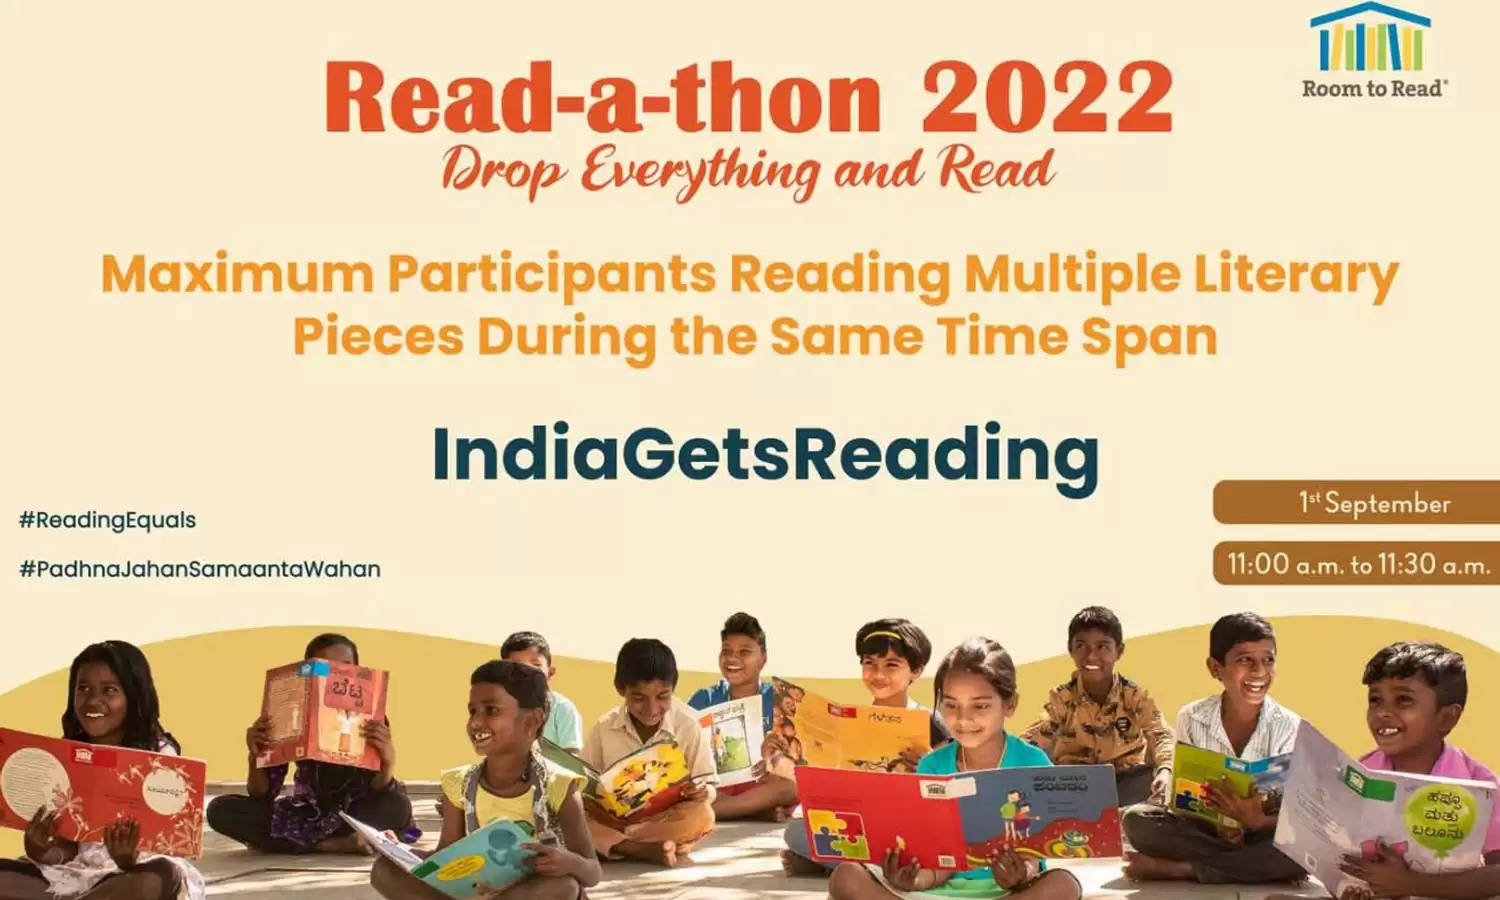 Room To Read India द्वारा उत्तराखंड में रीड-ए-थॉन का हुआ आयोजन 